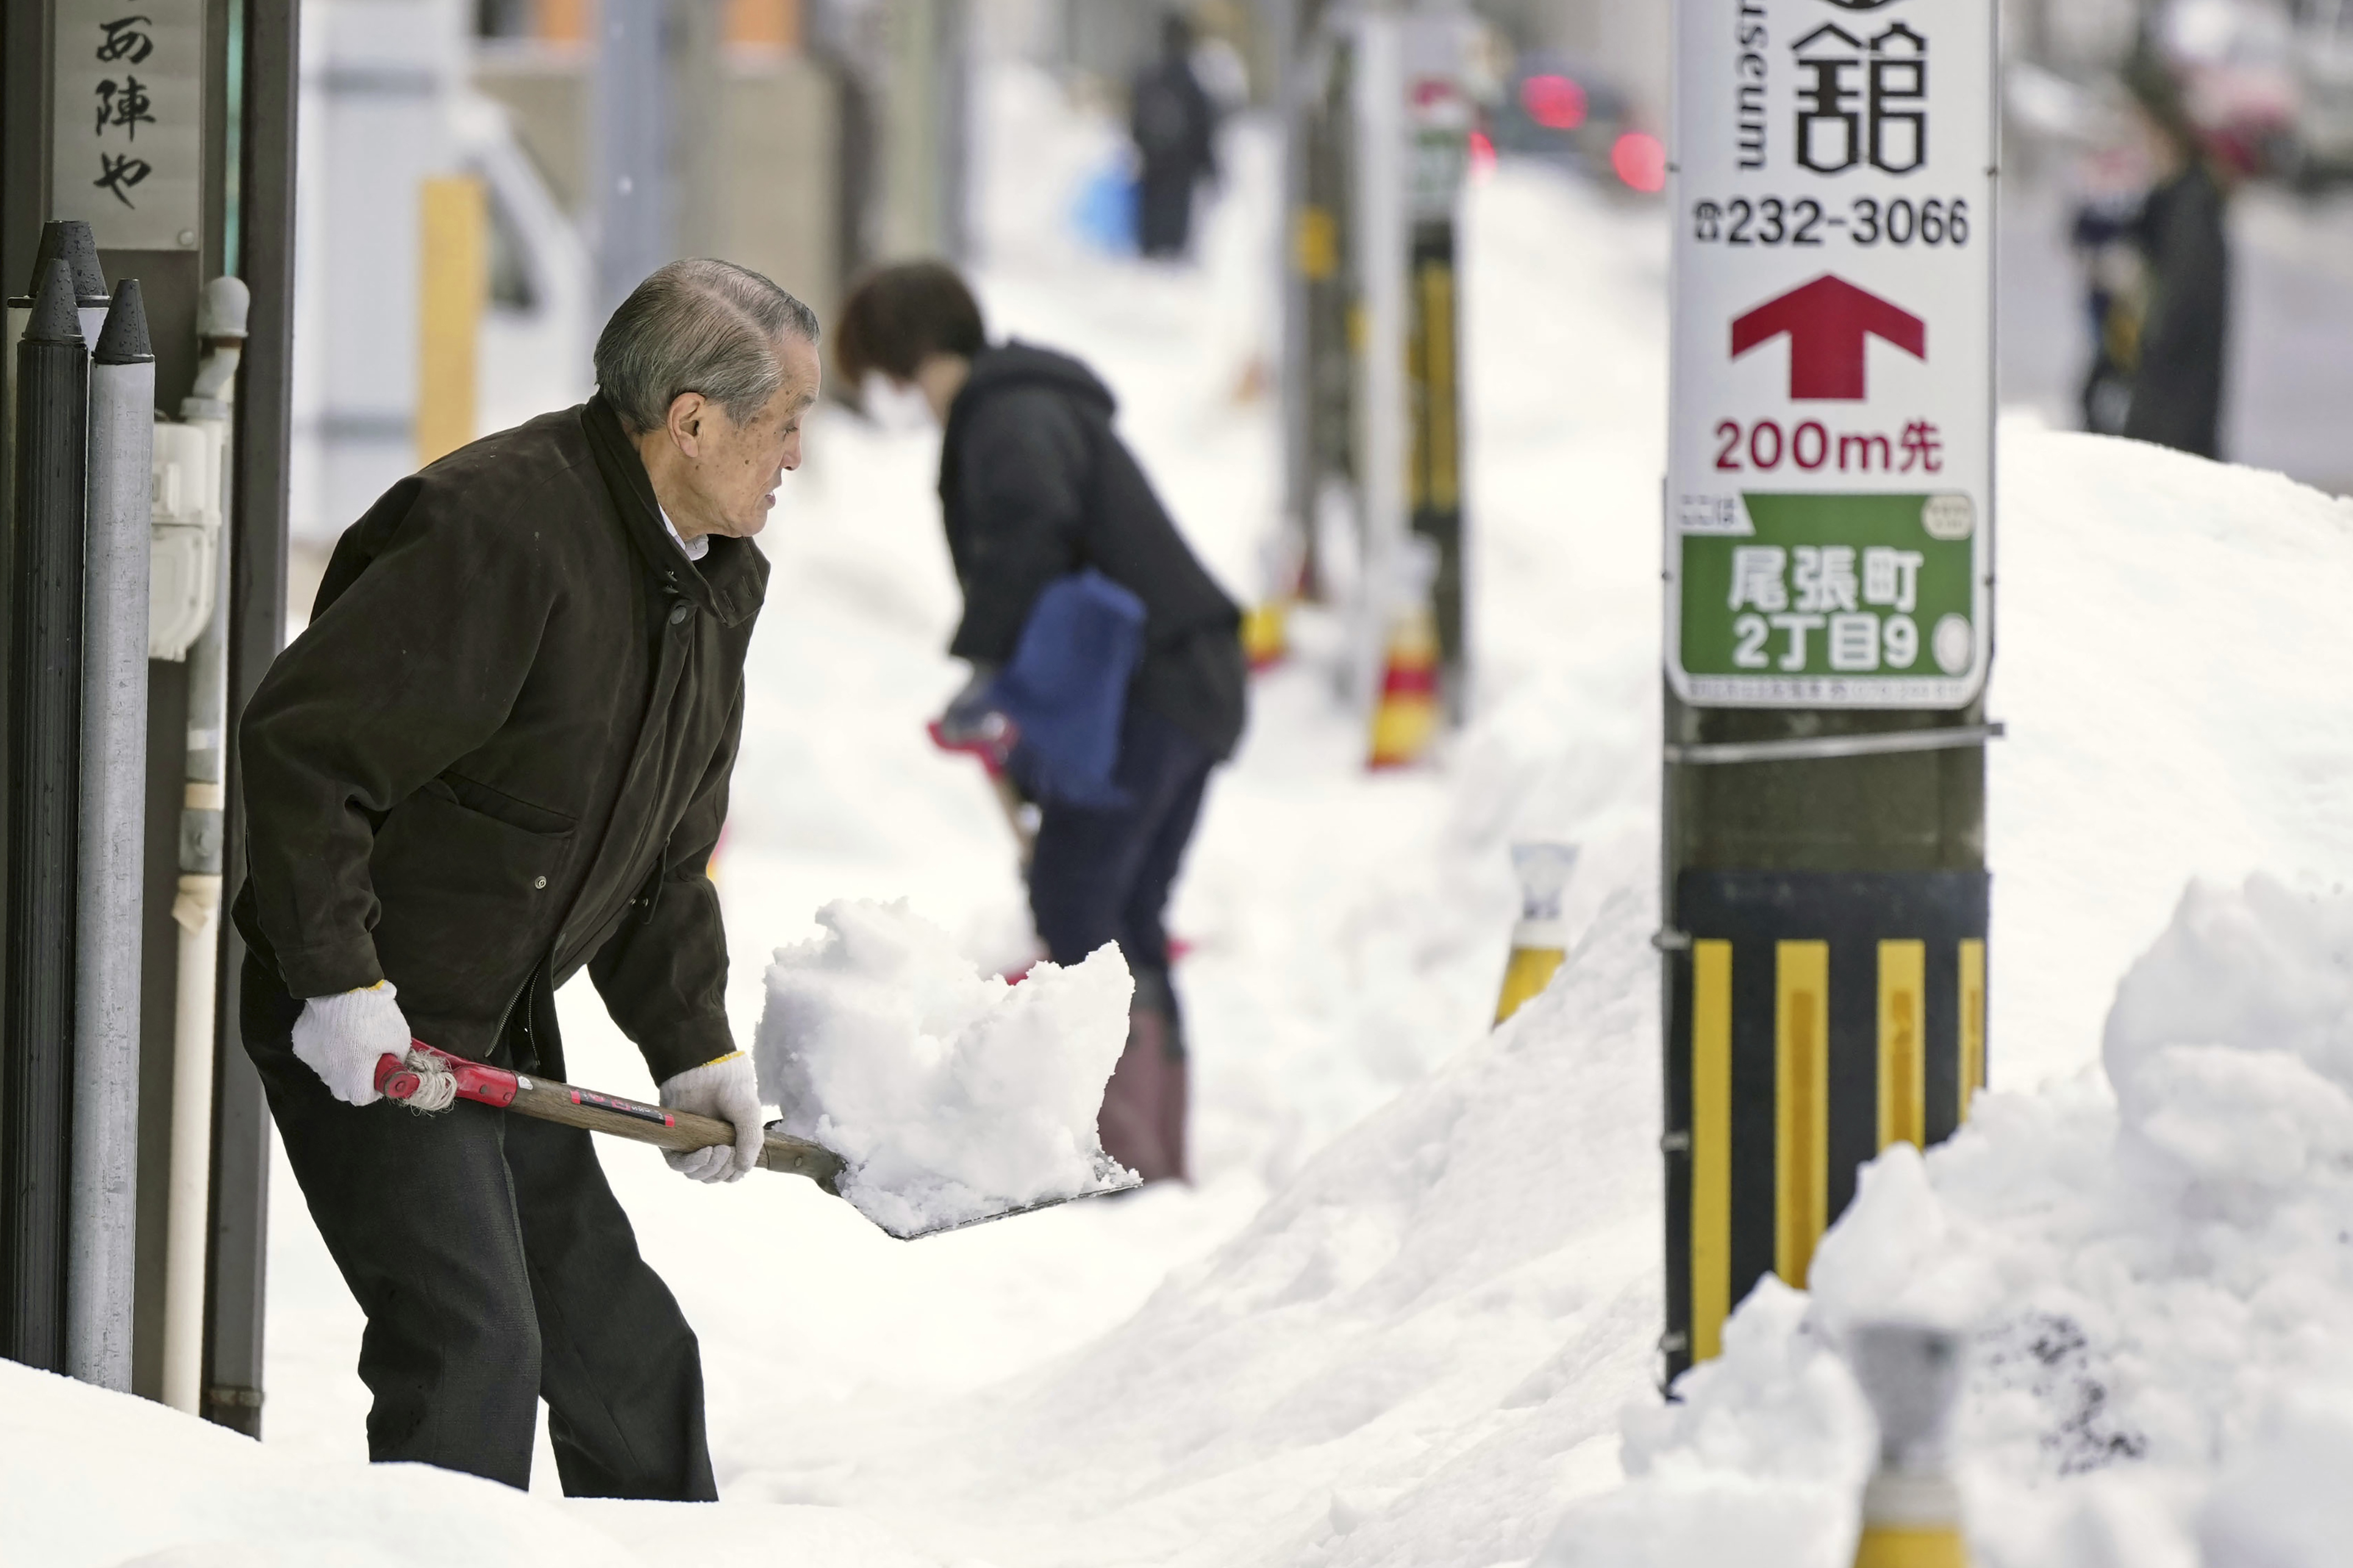 Las autoridades municipales en las regiones afectadas instaron a la población a tener cuidado durante la actividad de retiro de nieve y no trabajar solos. (AP)